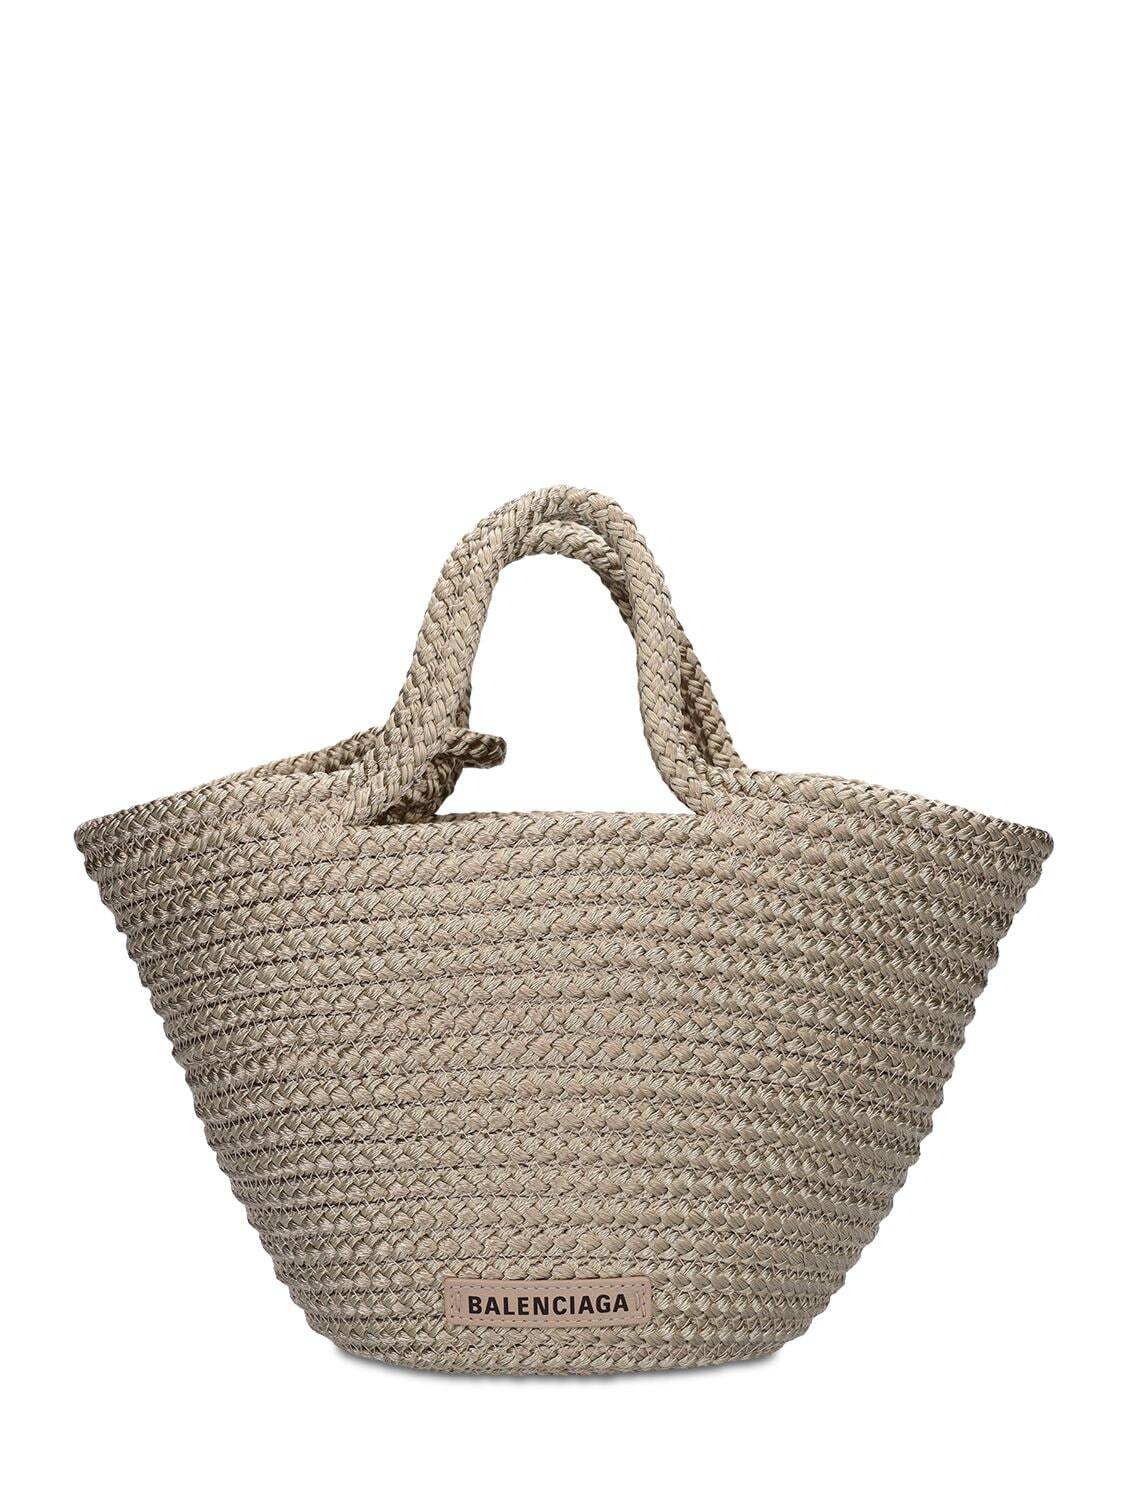 BALENCIAGA Small Ibiza Basket Bag in taupe